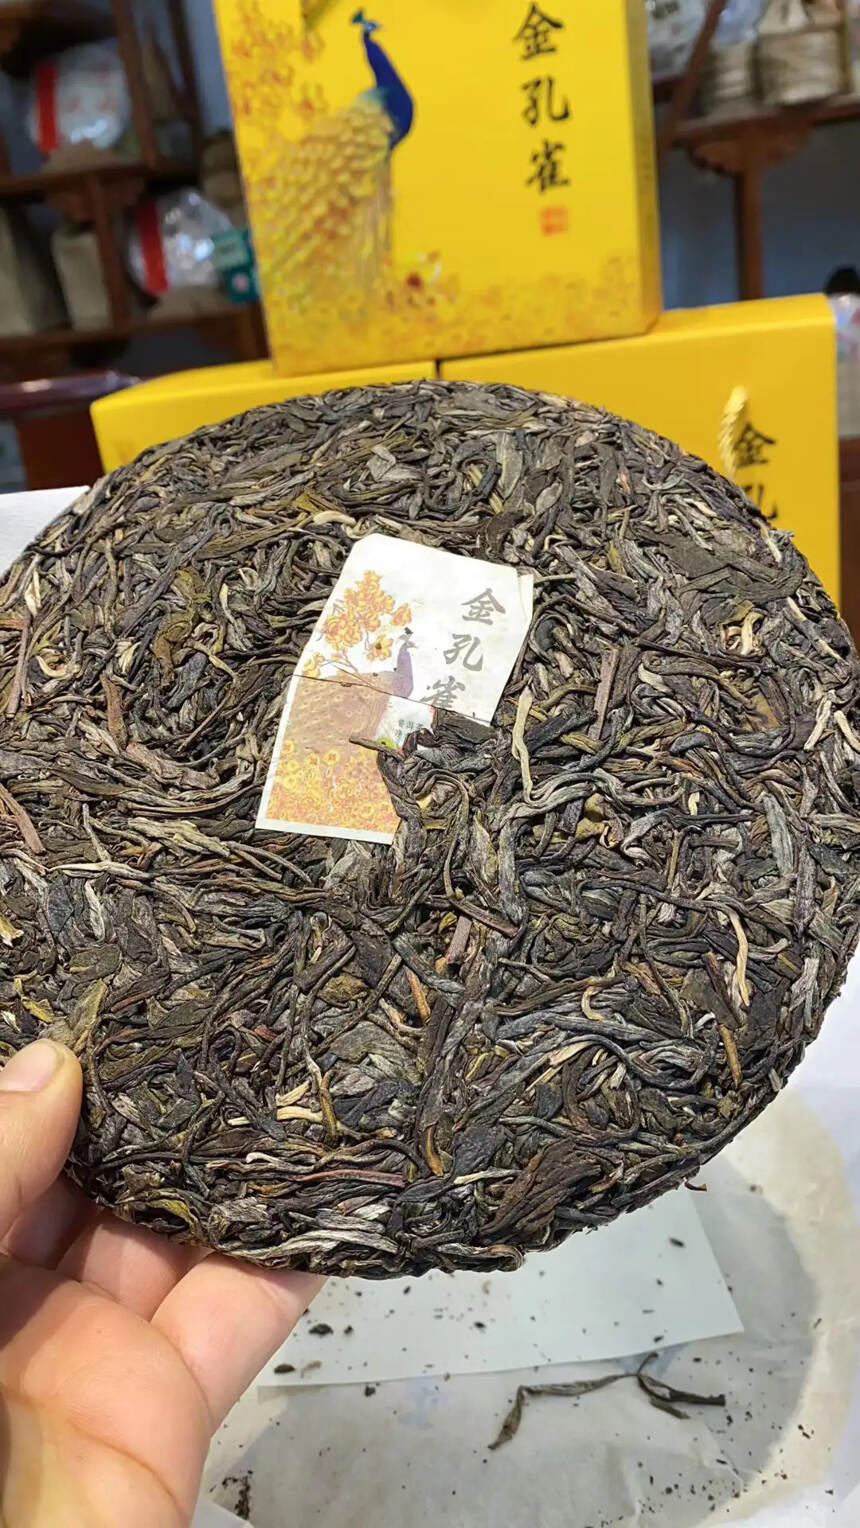 #普洱茶# 2020年金孔雀生茶 一饼一个礼盒
选用